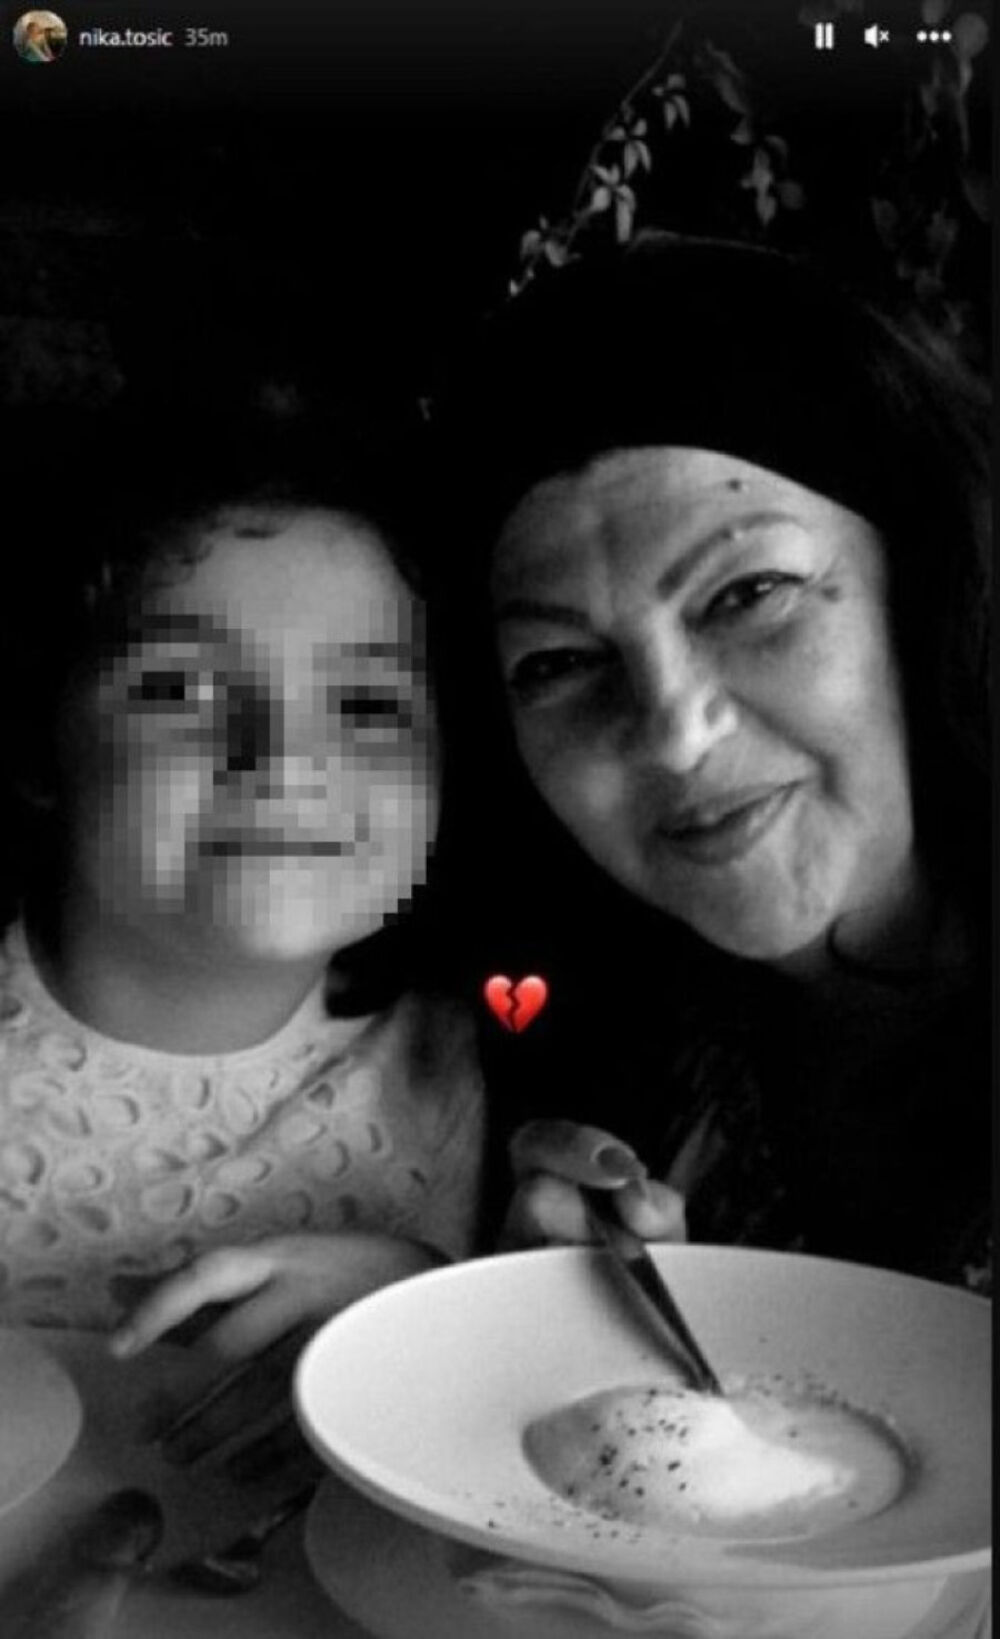 Na društvenoj mreži Instagram je Divnina unuka, a Jelenina ćerka, podelila fotografiju sa bakom